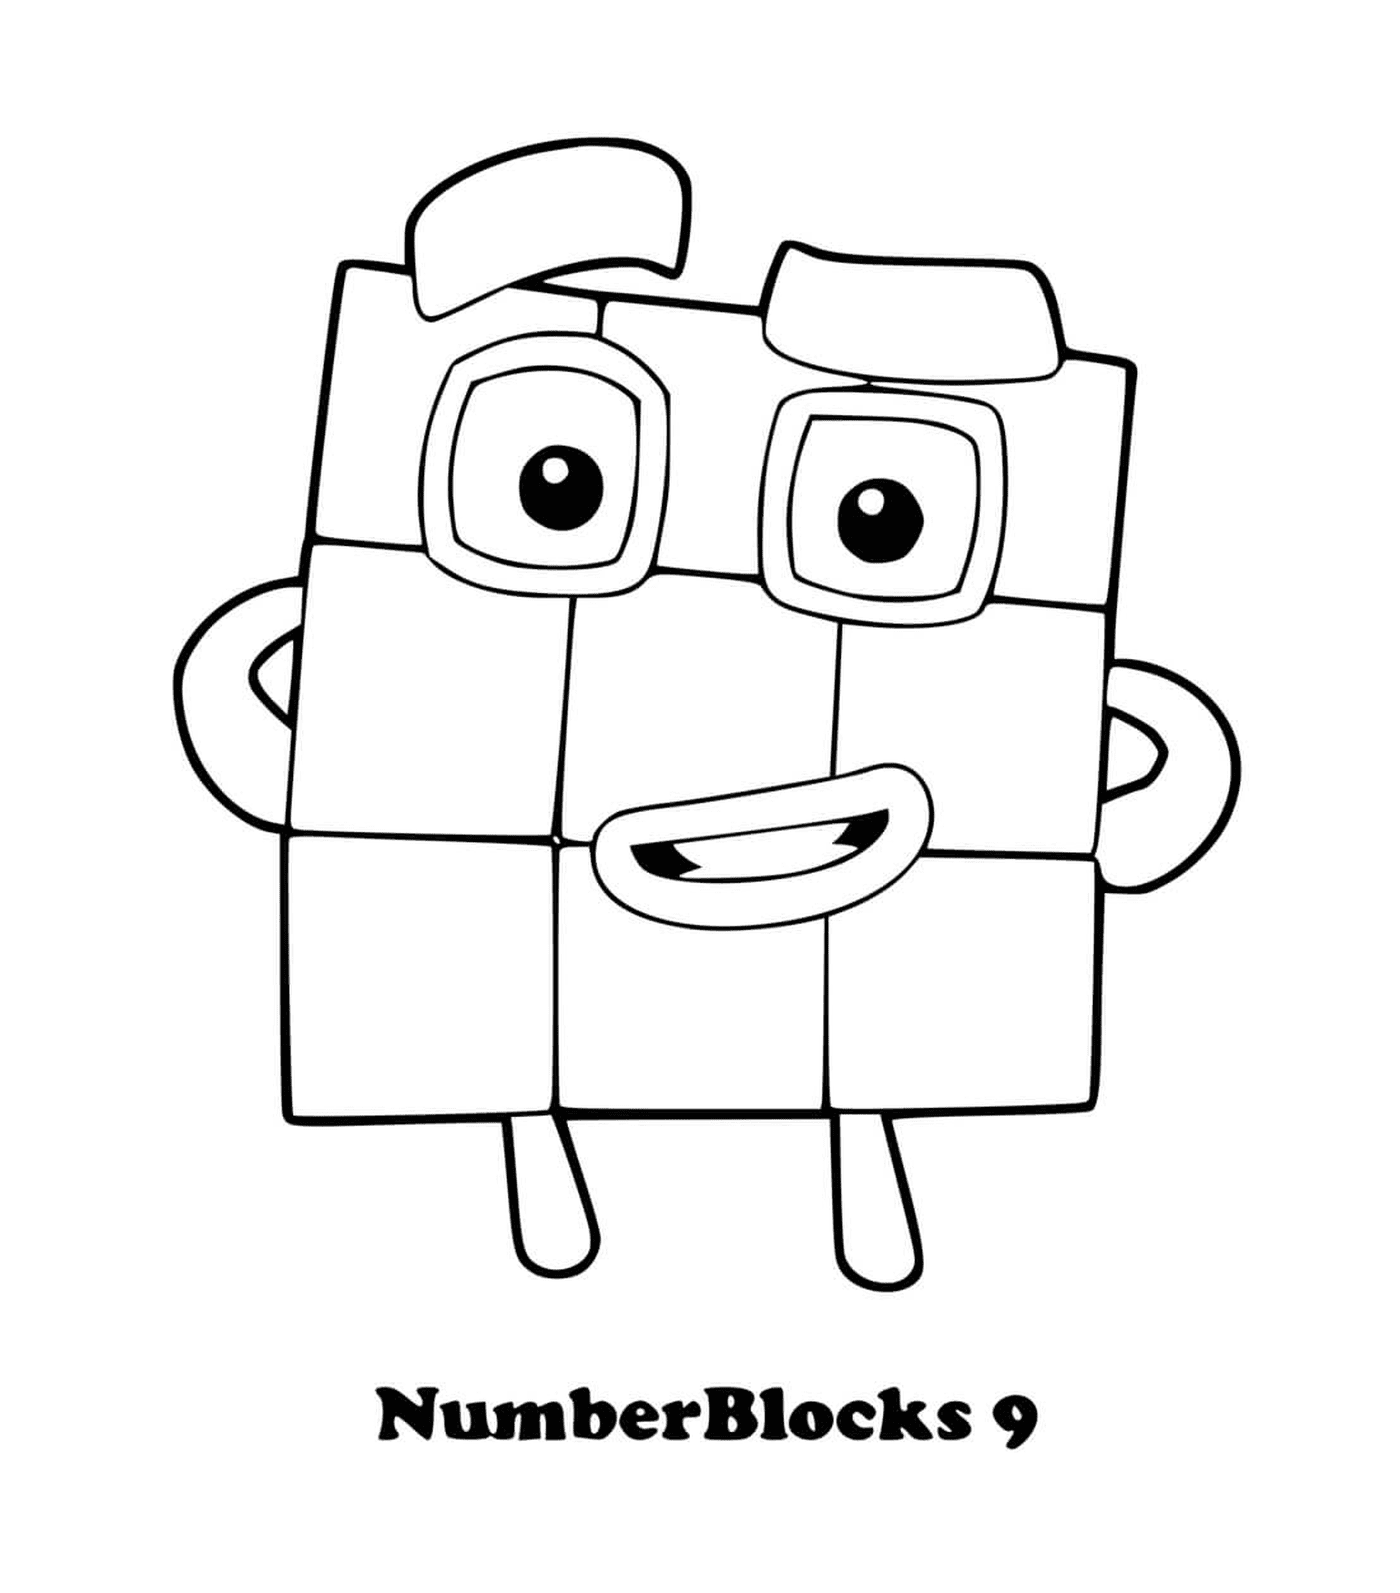  عدد مربعات الأرقام رقم 9، a مربع مع عيون 